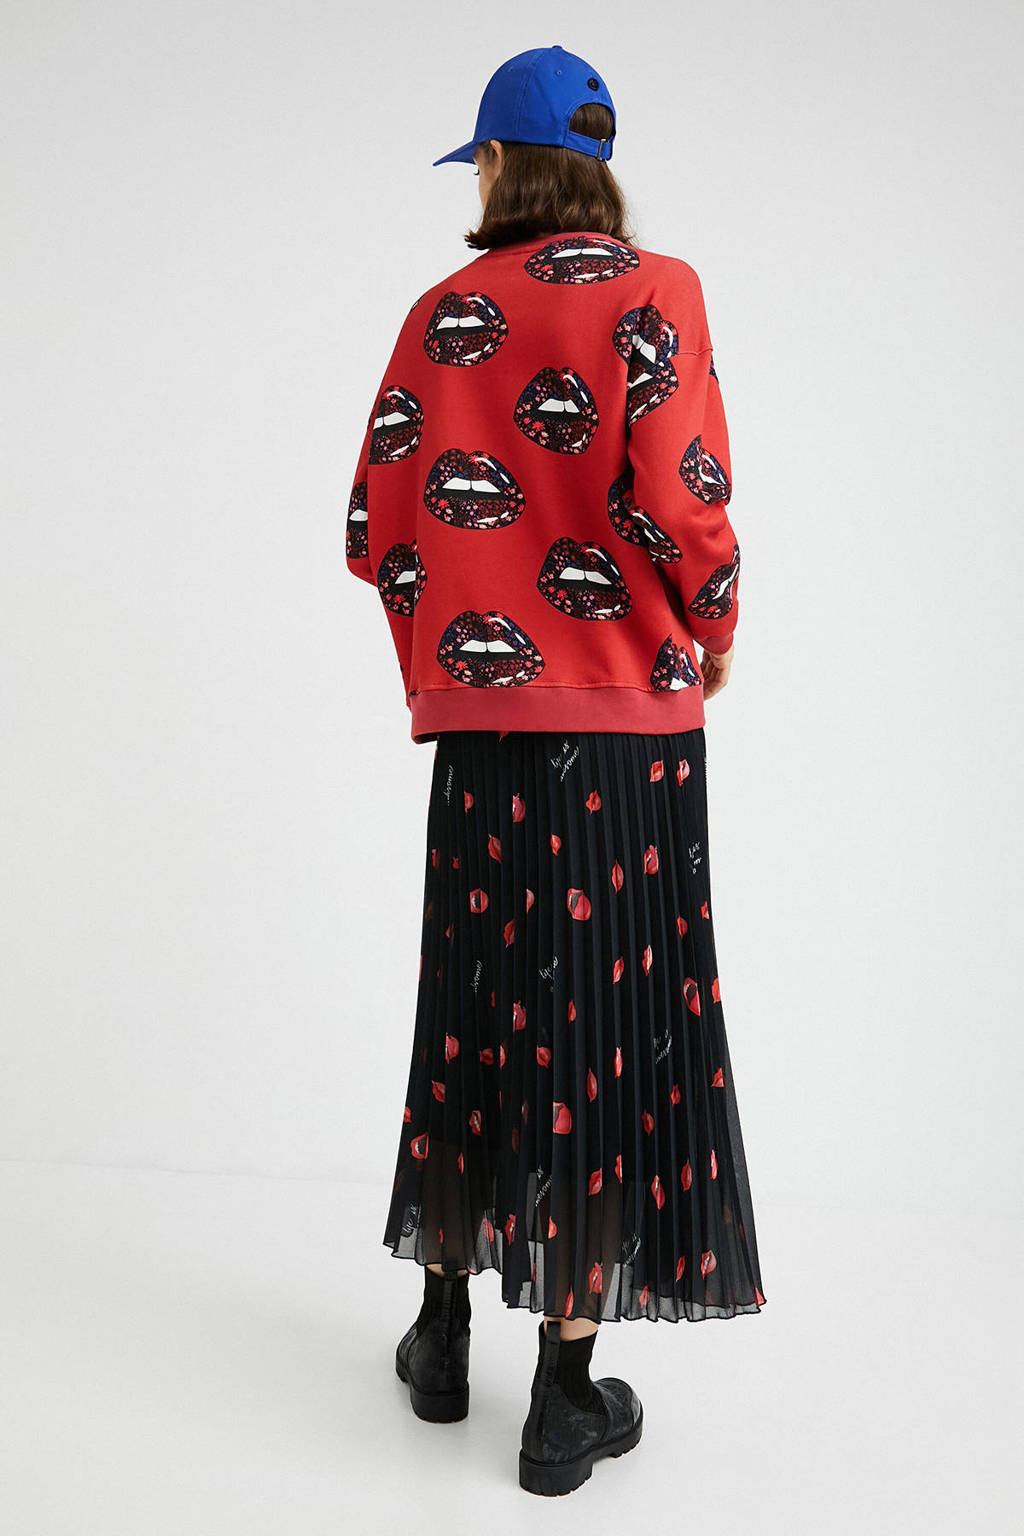 Rood, zwart en paarse dames Desigual sweater van katoen met all over print, lange mouwen, ronde hals en elastische boord